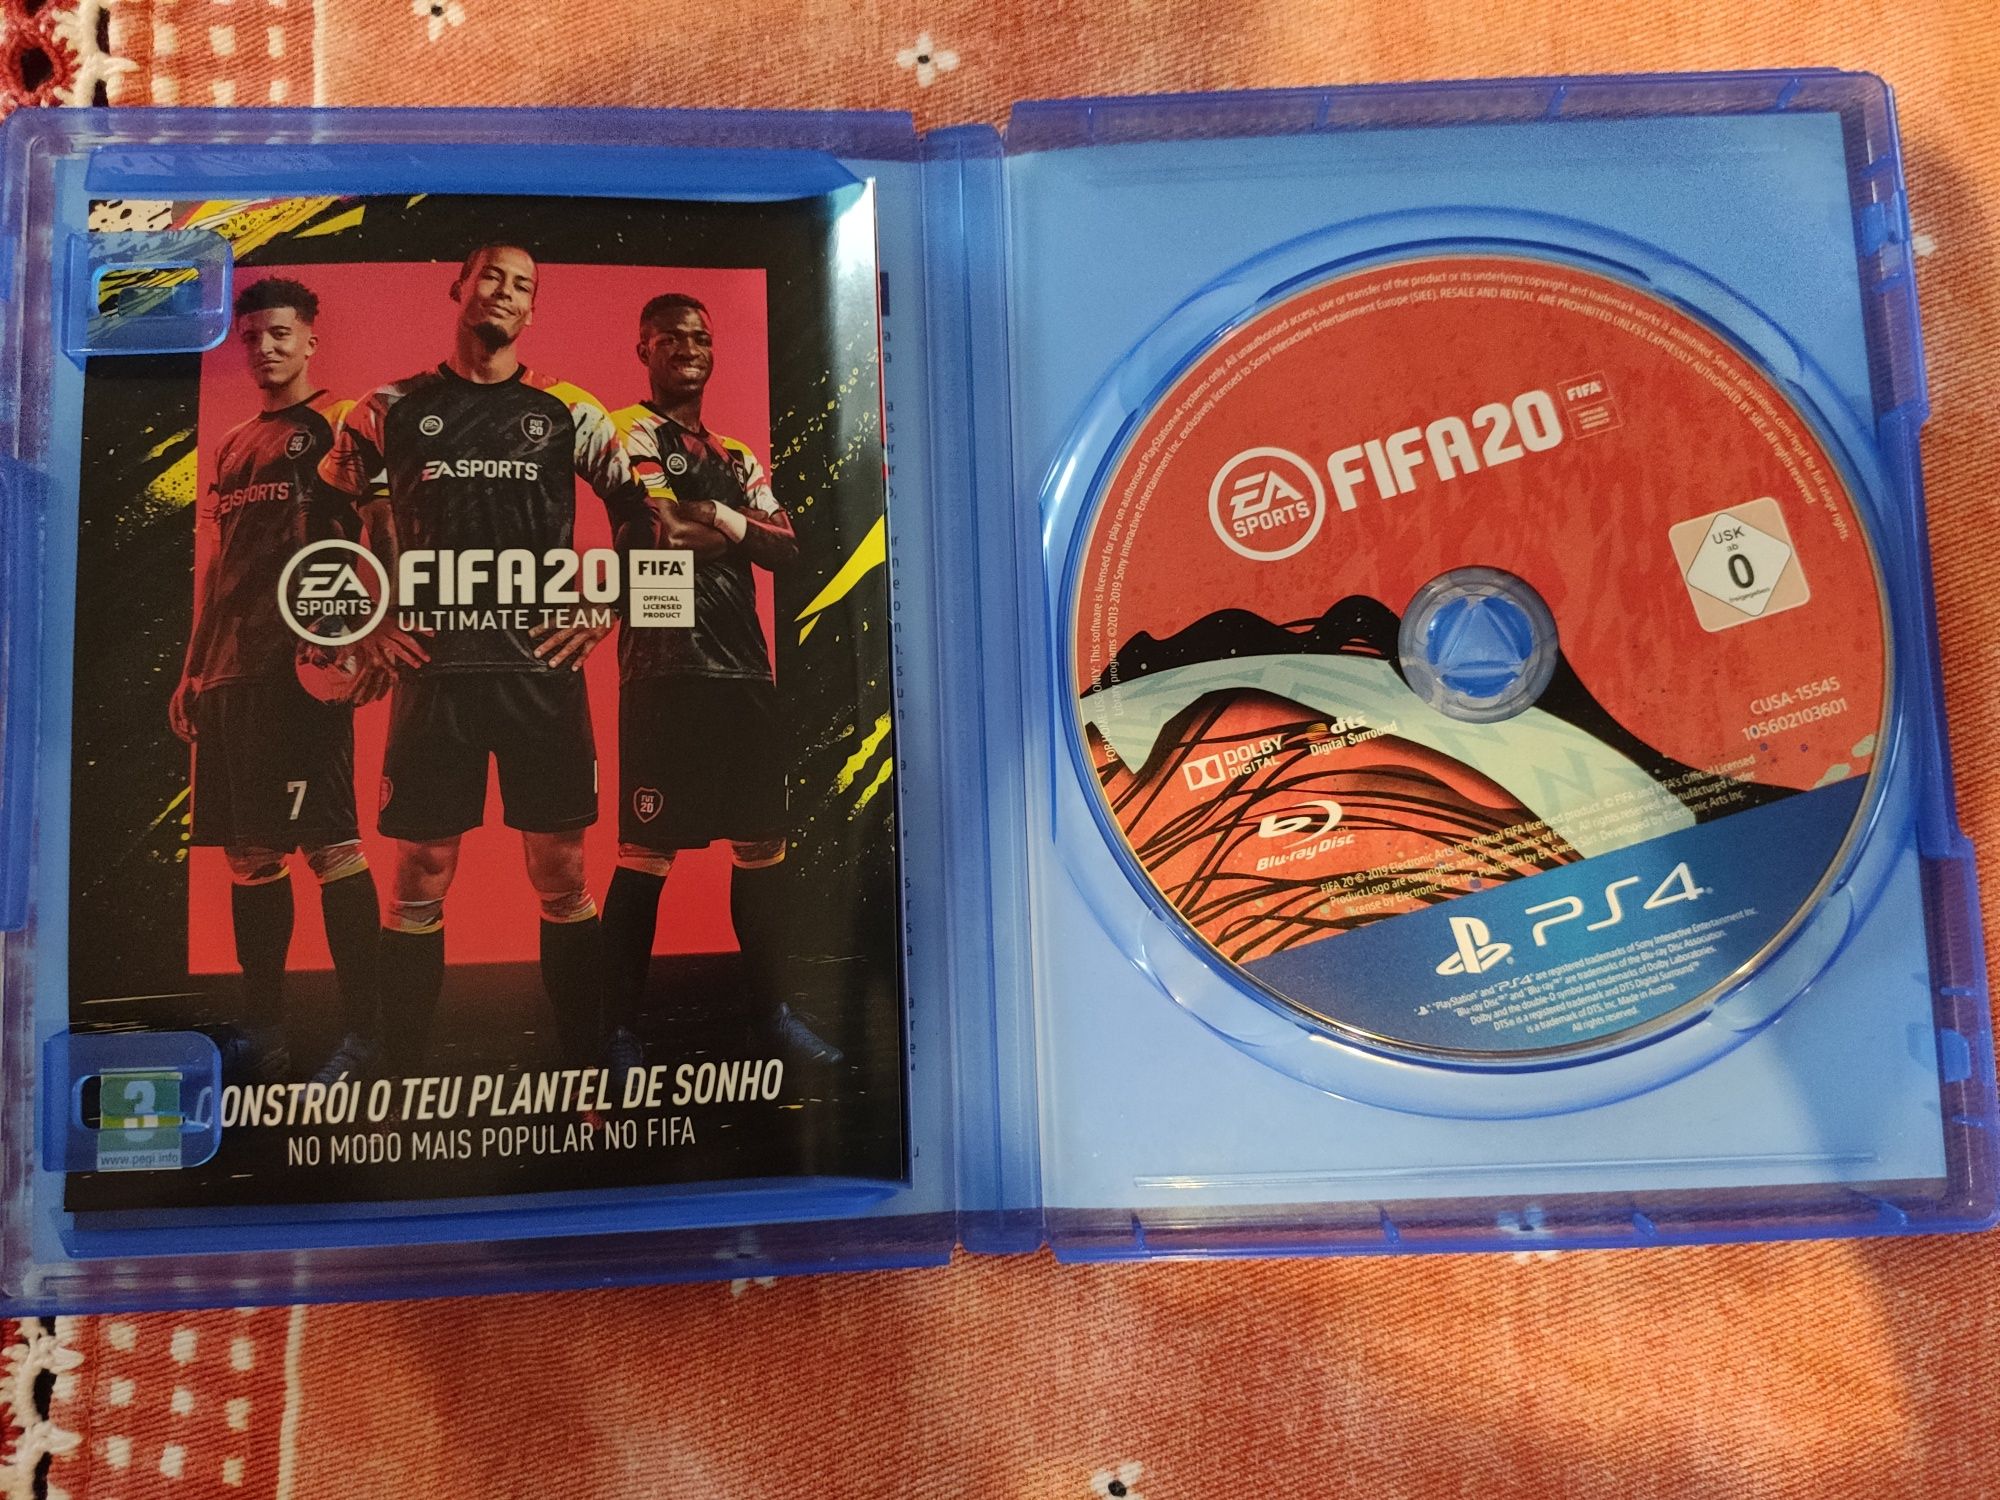 FIFA 20 PS4 - como novo, em excelente estado.
Faço negócio em mãos zon